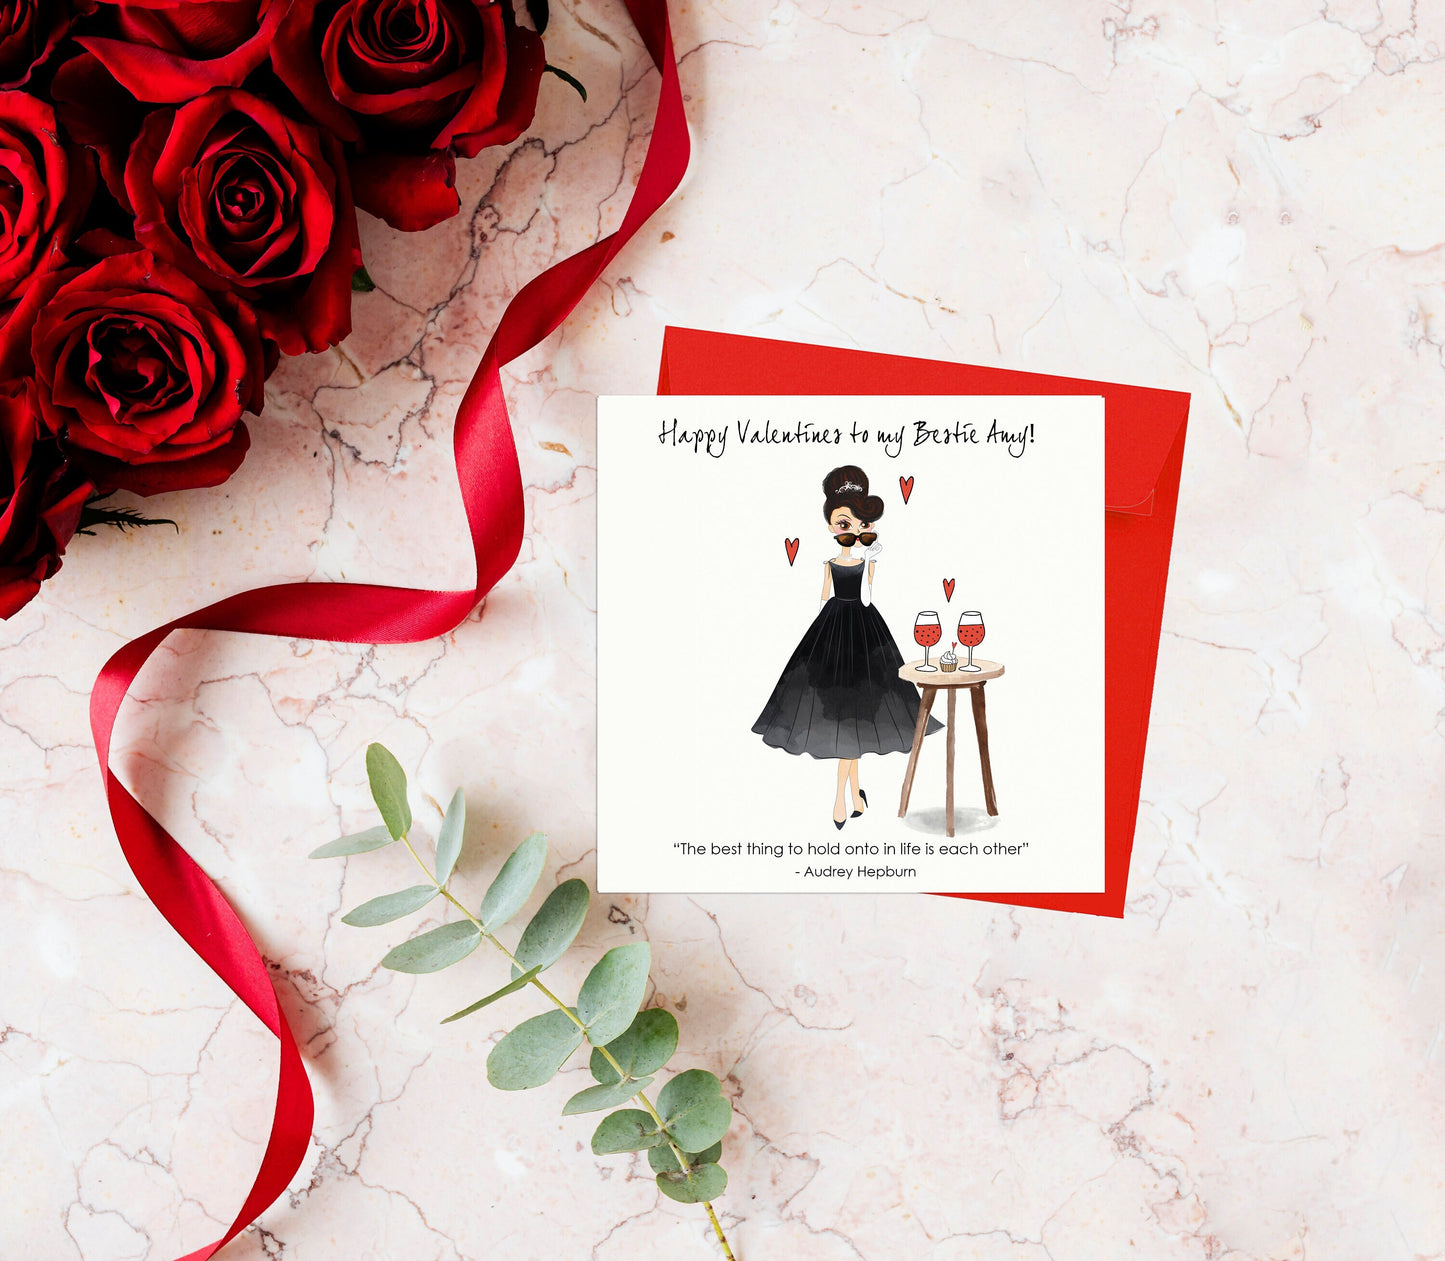 Best Friend Valentines Card, Audrey Hepburn, Galentines Day Card For Bestie, Cute Girlfriend Valentines Card, BFF Valentines Day Card